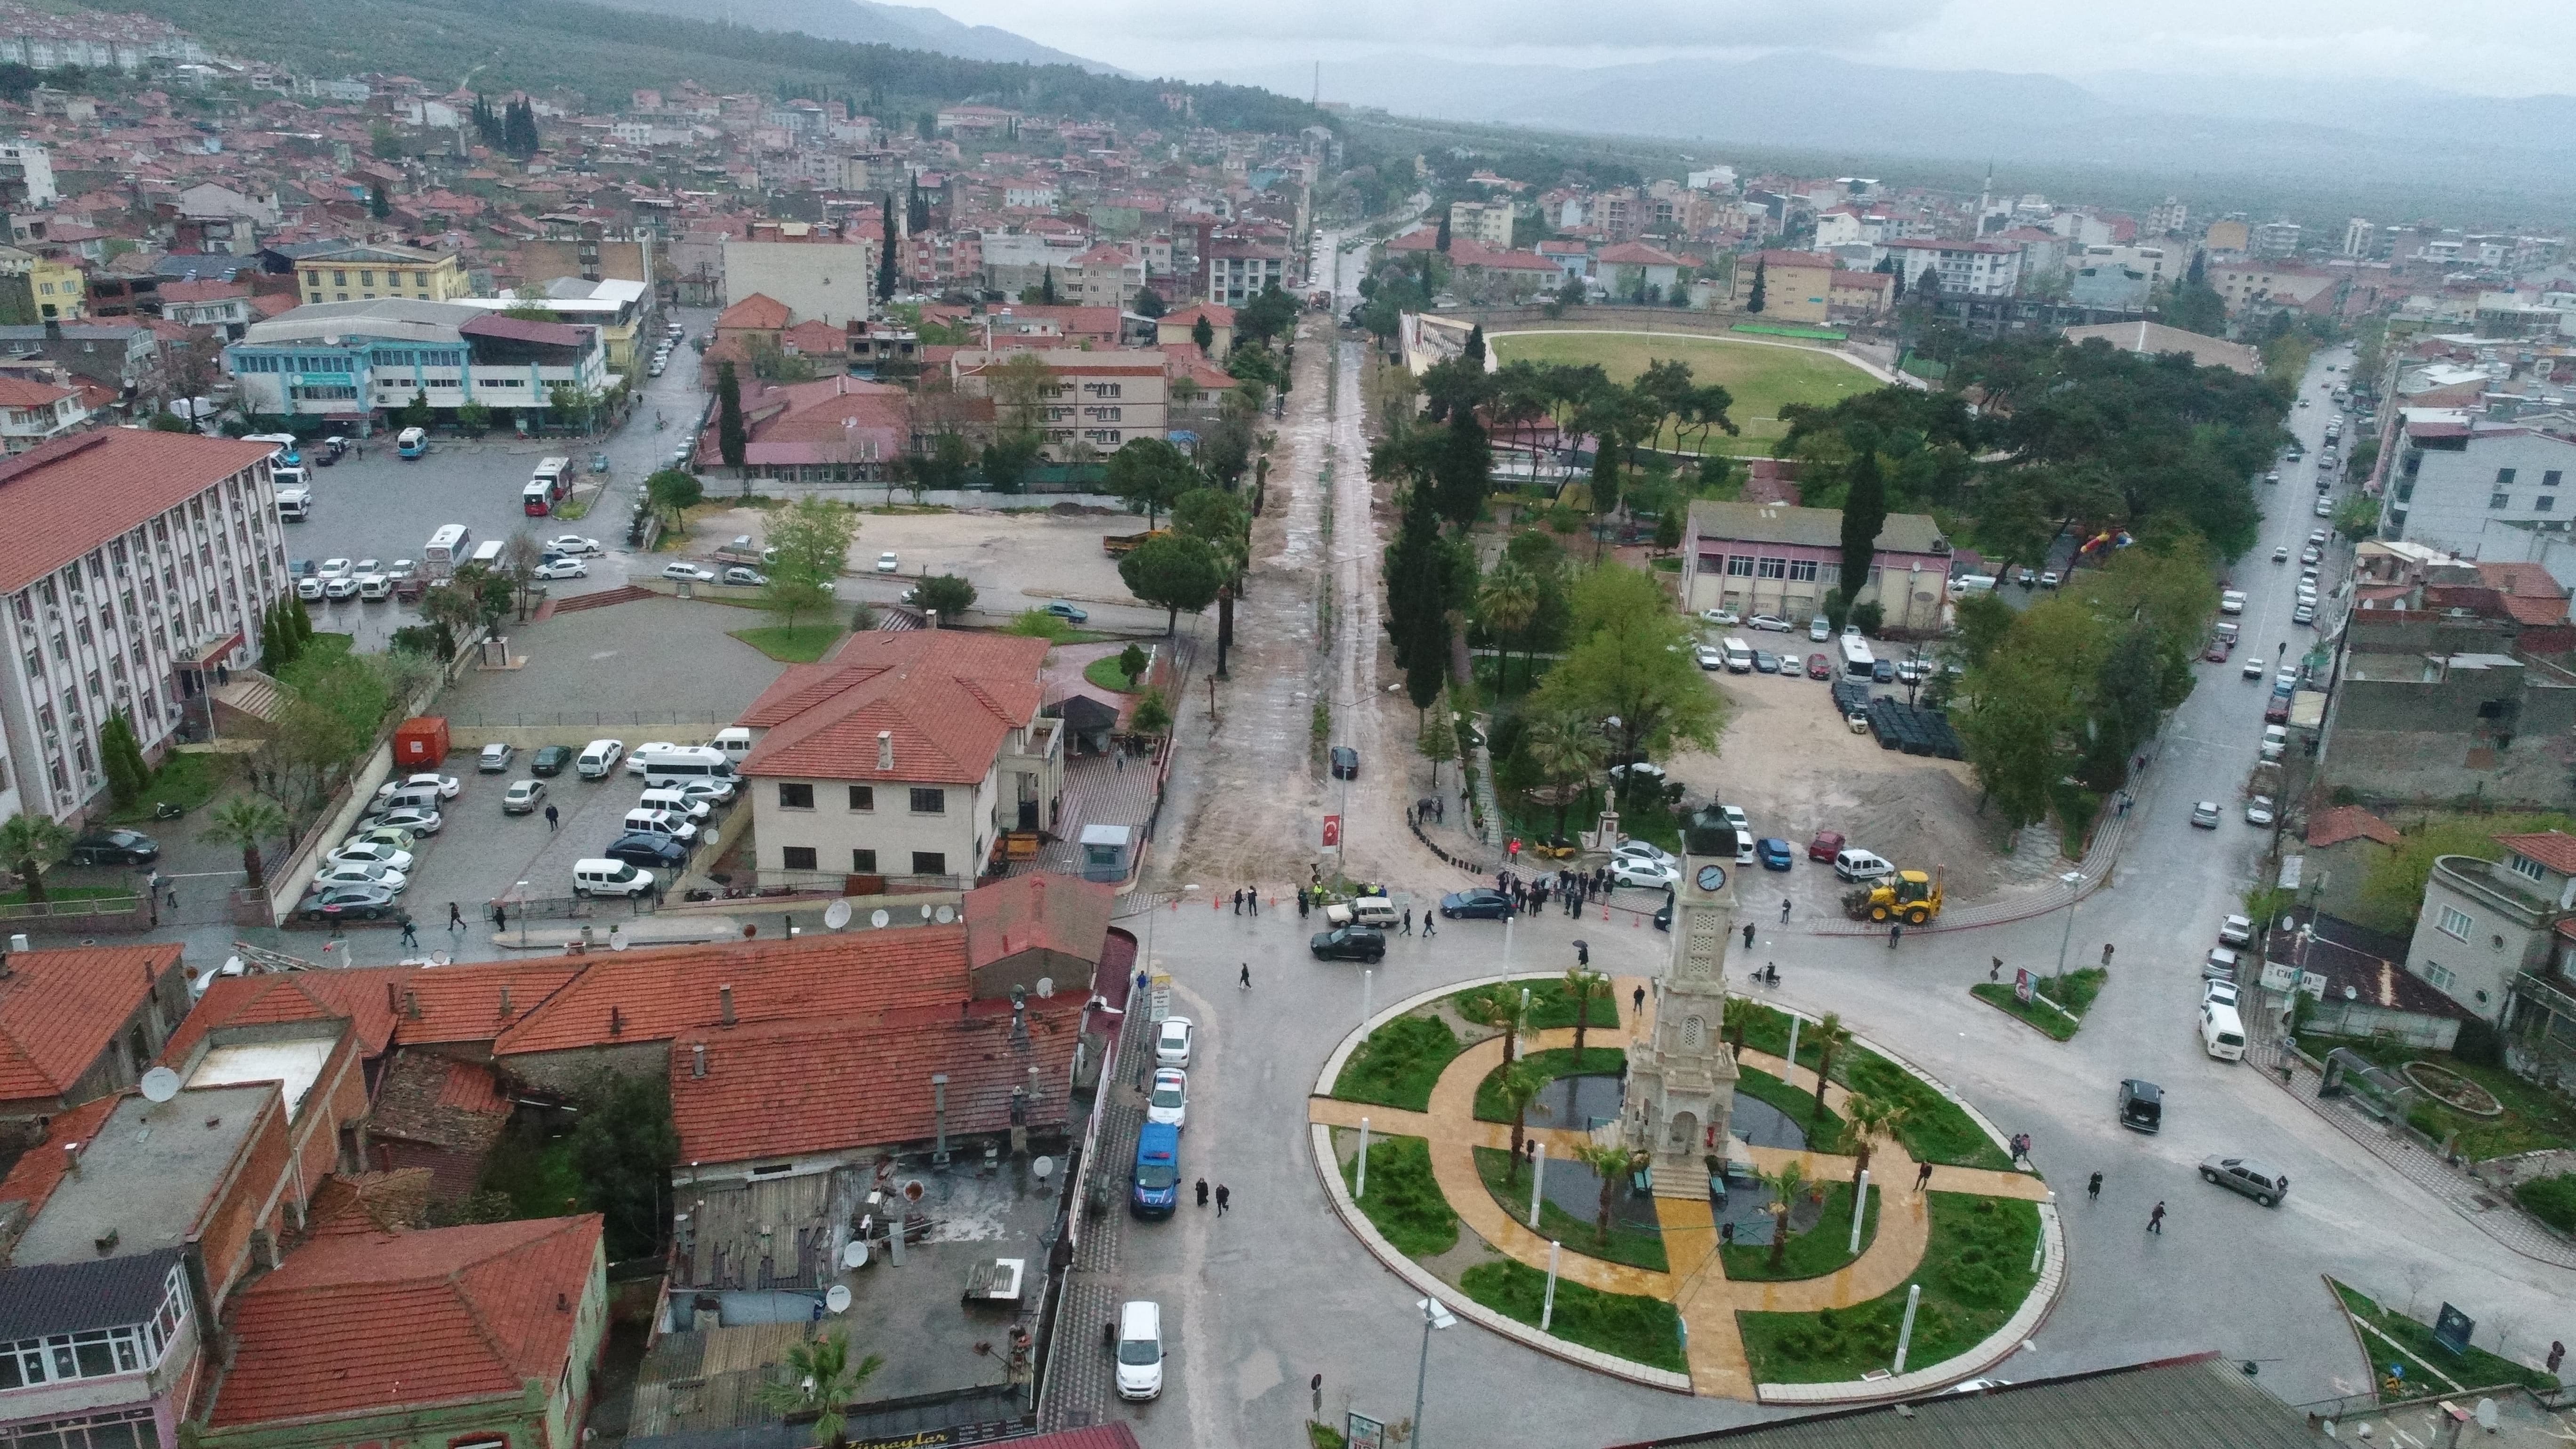 Manisa Kırkağaç'a prestij cadde için start verildi